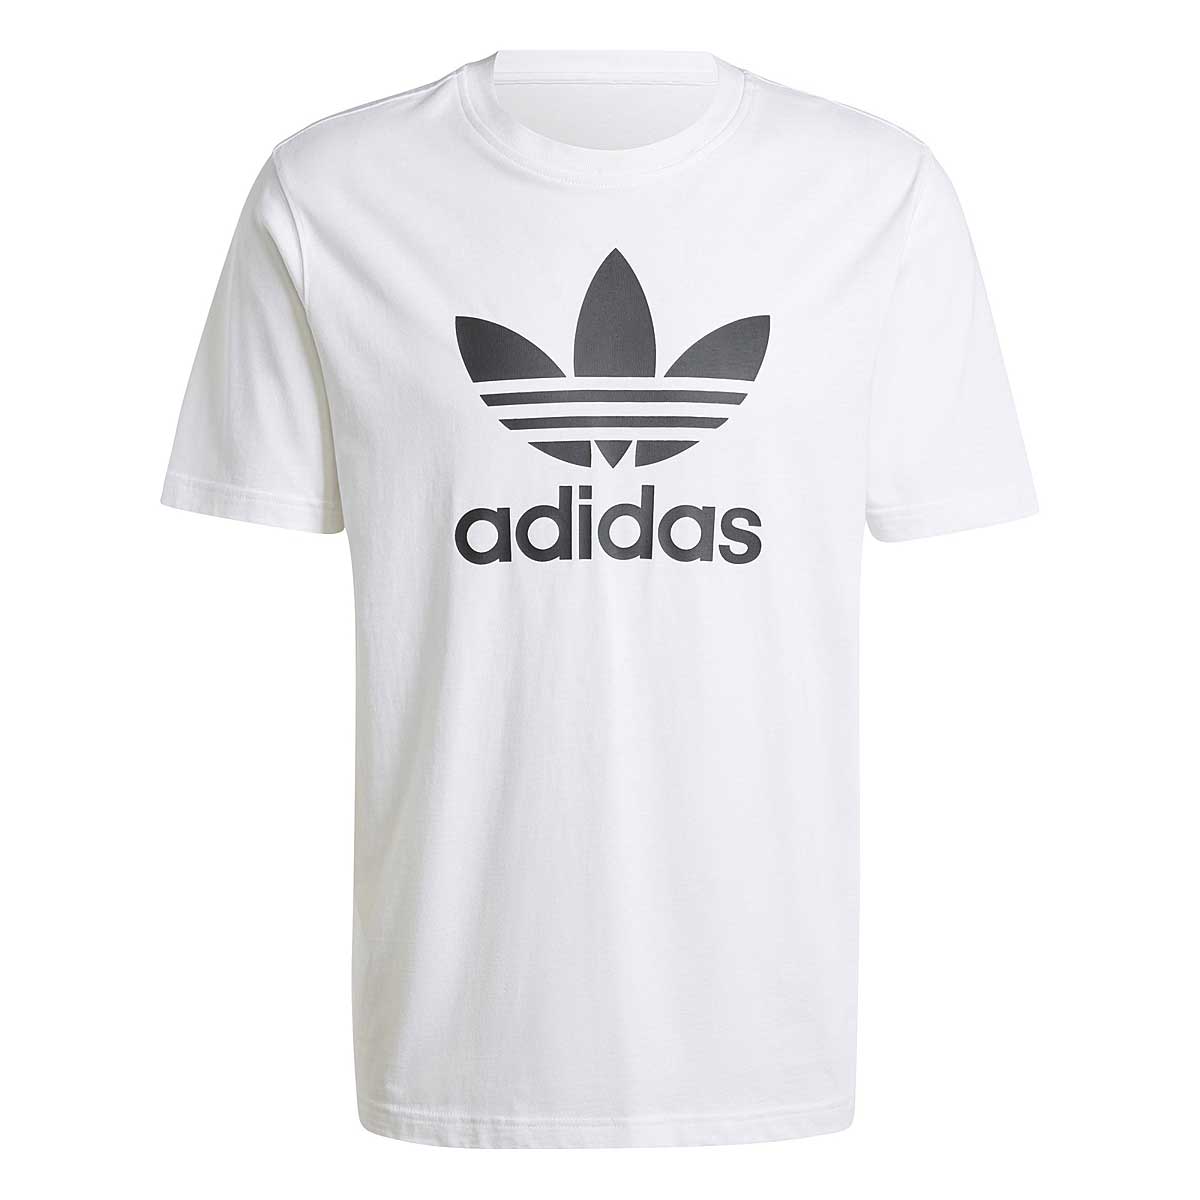 Image of Adidas Originals Adicolor Trefoil T-shirt, White